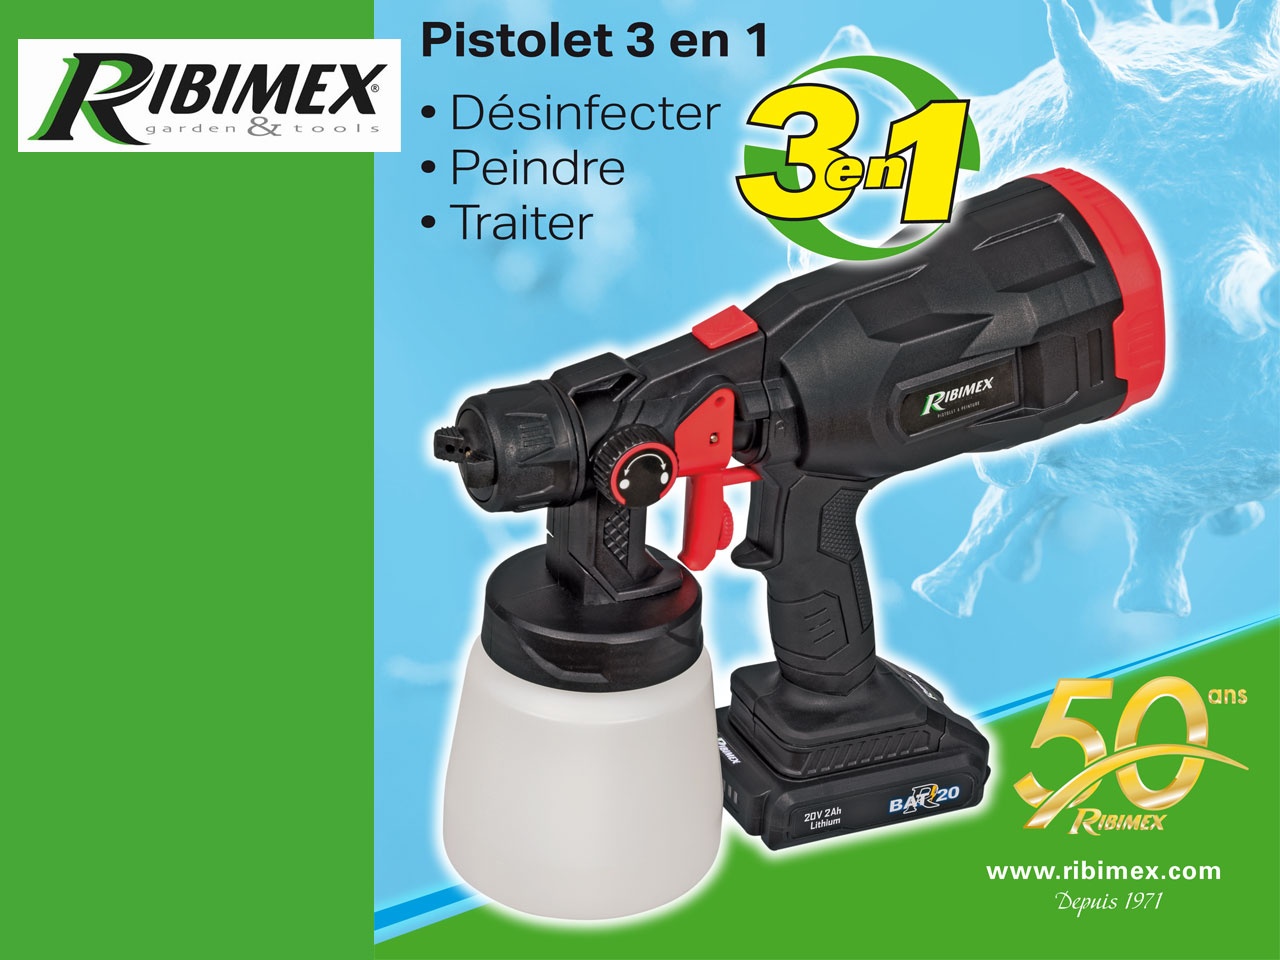 RIBIMEX Garden & Tools propose un Pistolet 3 en 1